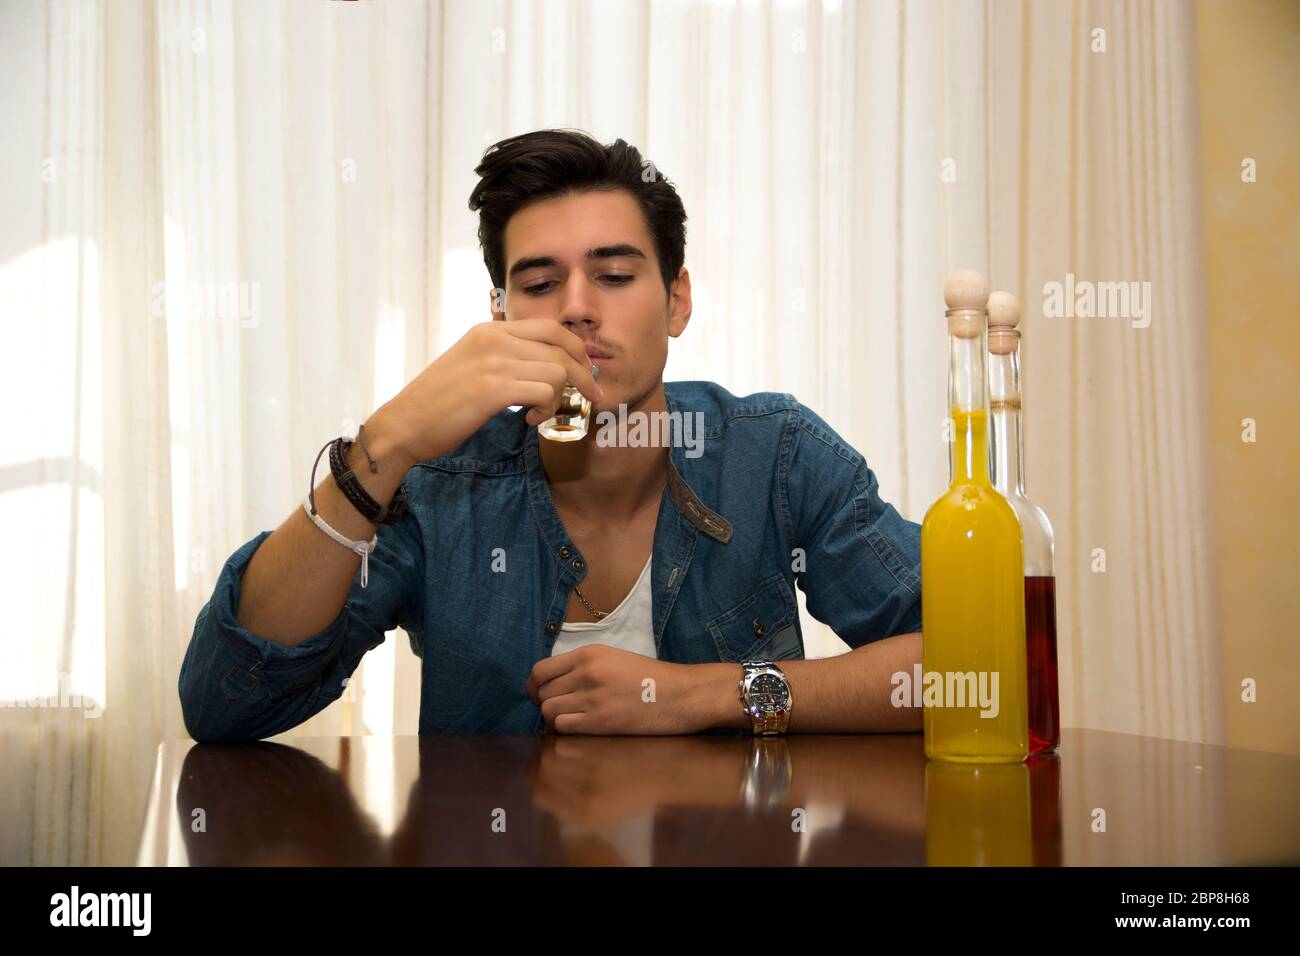 Giovane uomo seduto a bere da solo ad un tavolo con due bottiglie di liquori accanto lui sorseggiando dal colpo di vetro di affogare i suoi dispiaceri Foto Stock